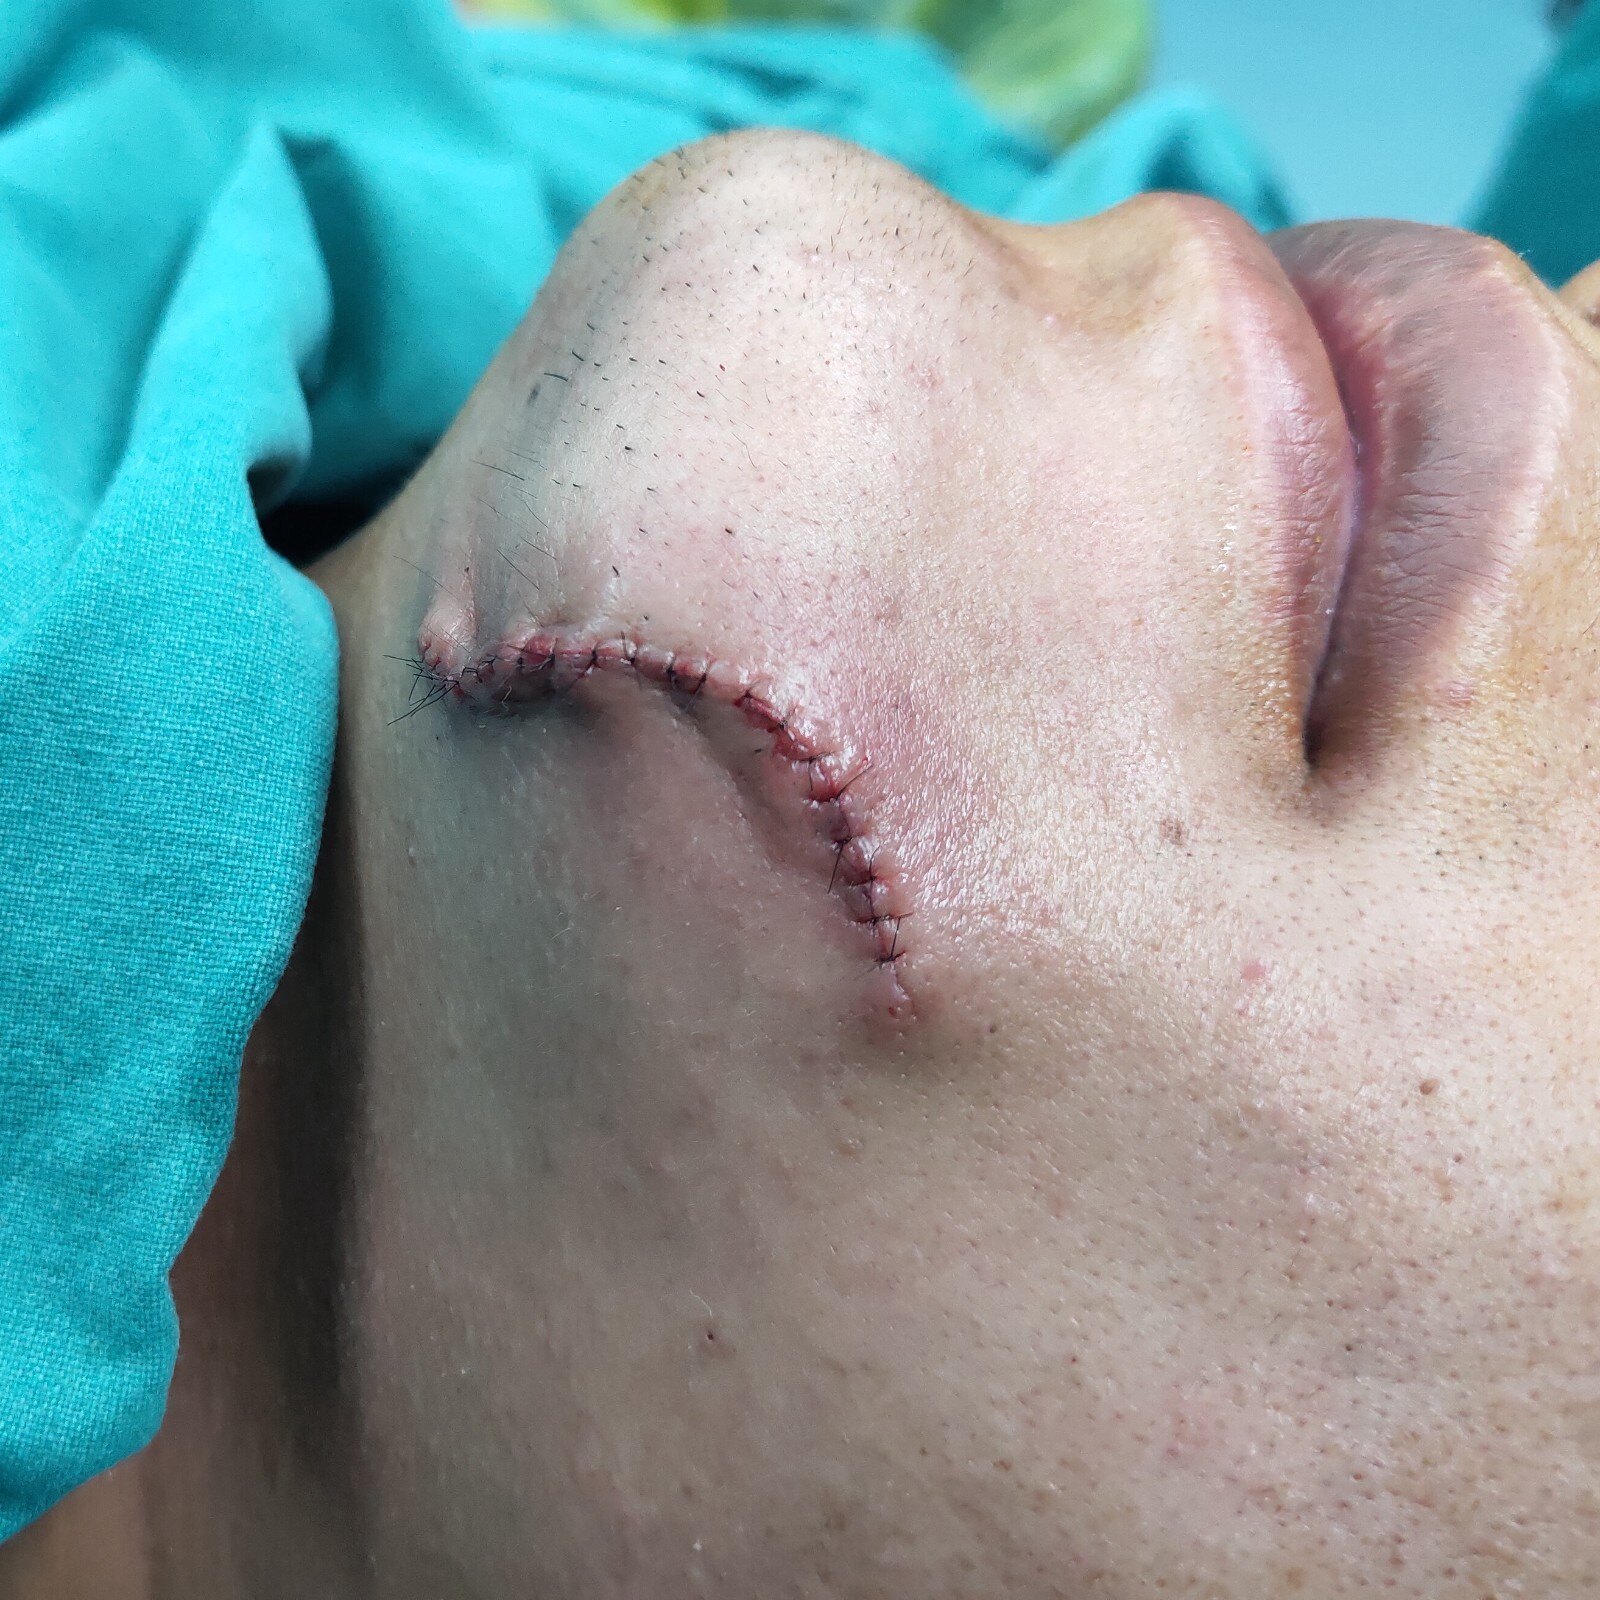 疤痕案例十四:下巴刀伤缝合后疤痕增生案例解析 